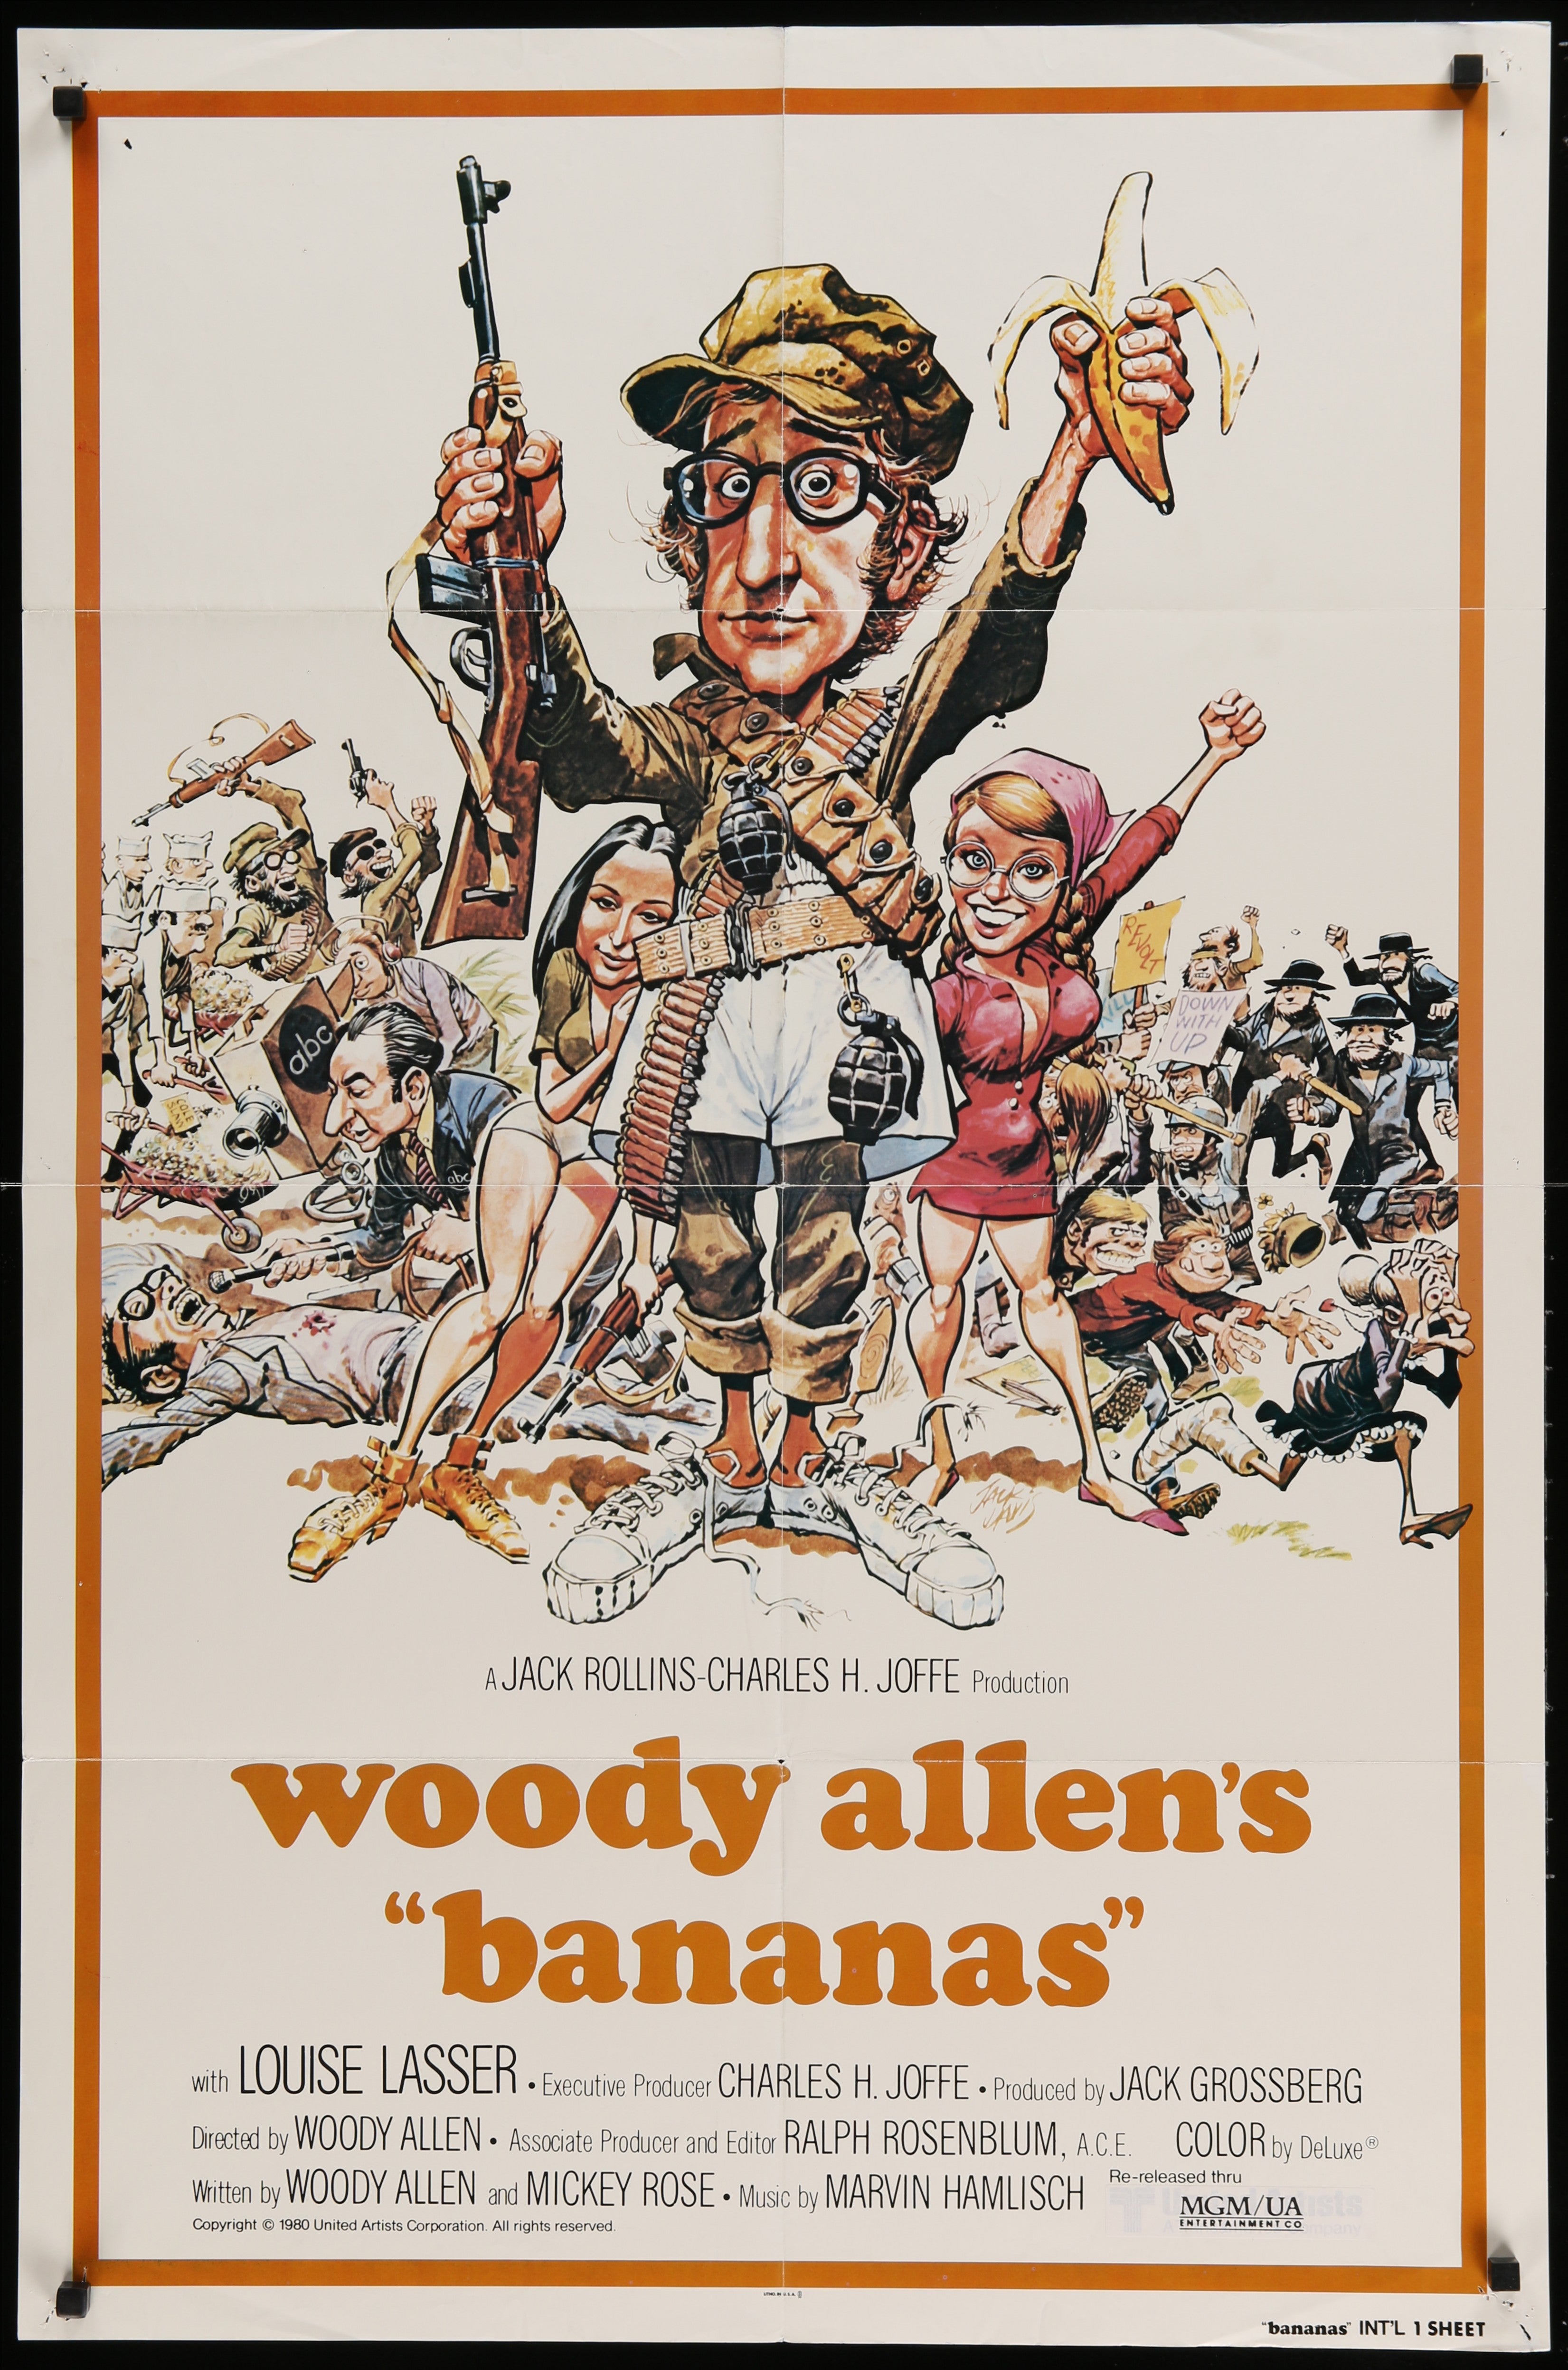 Woody Allen's 